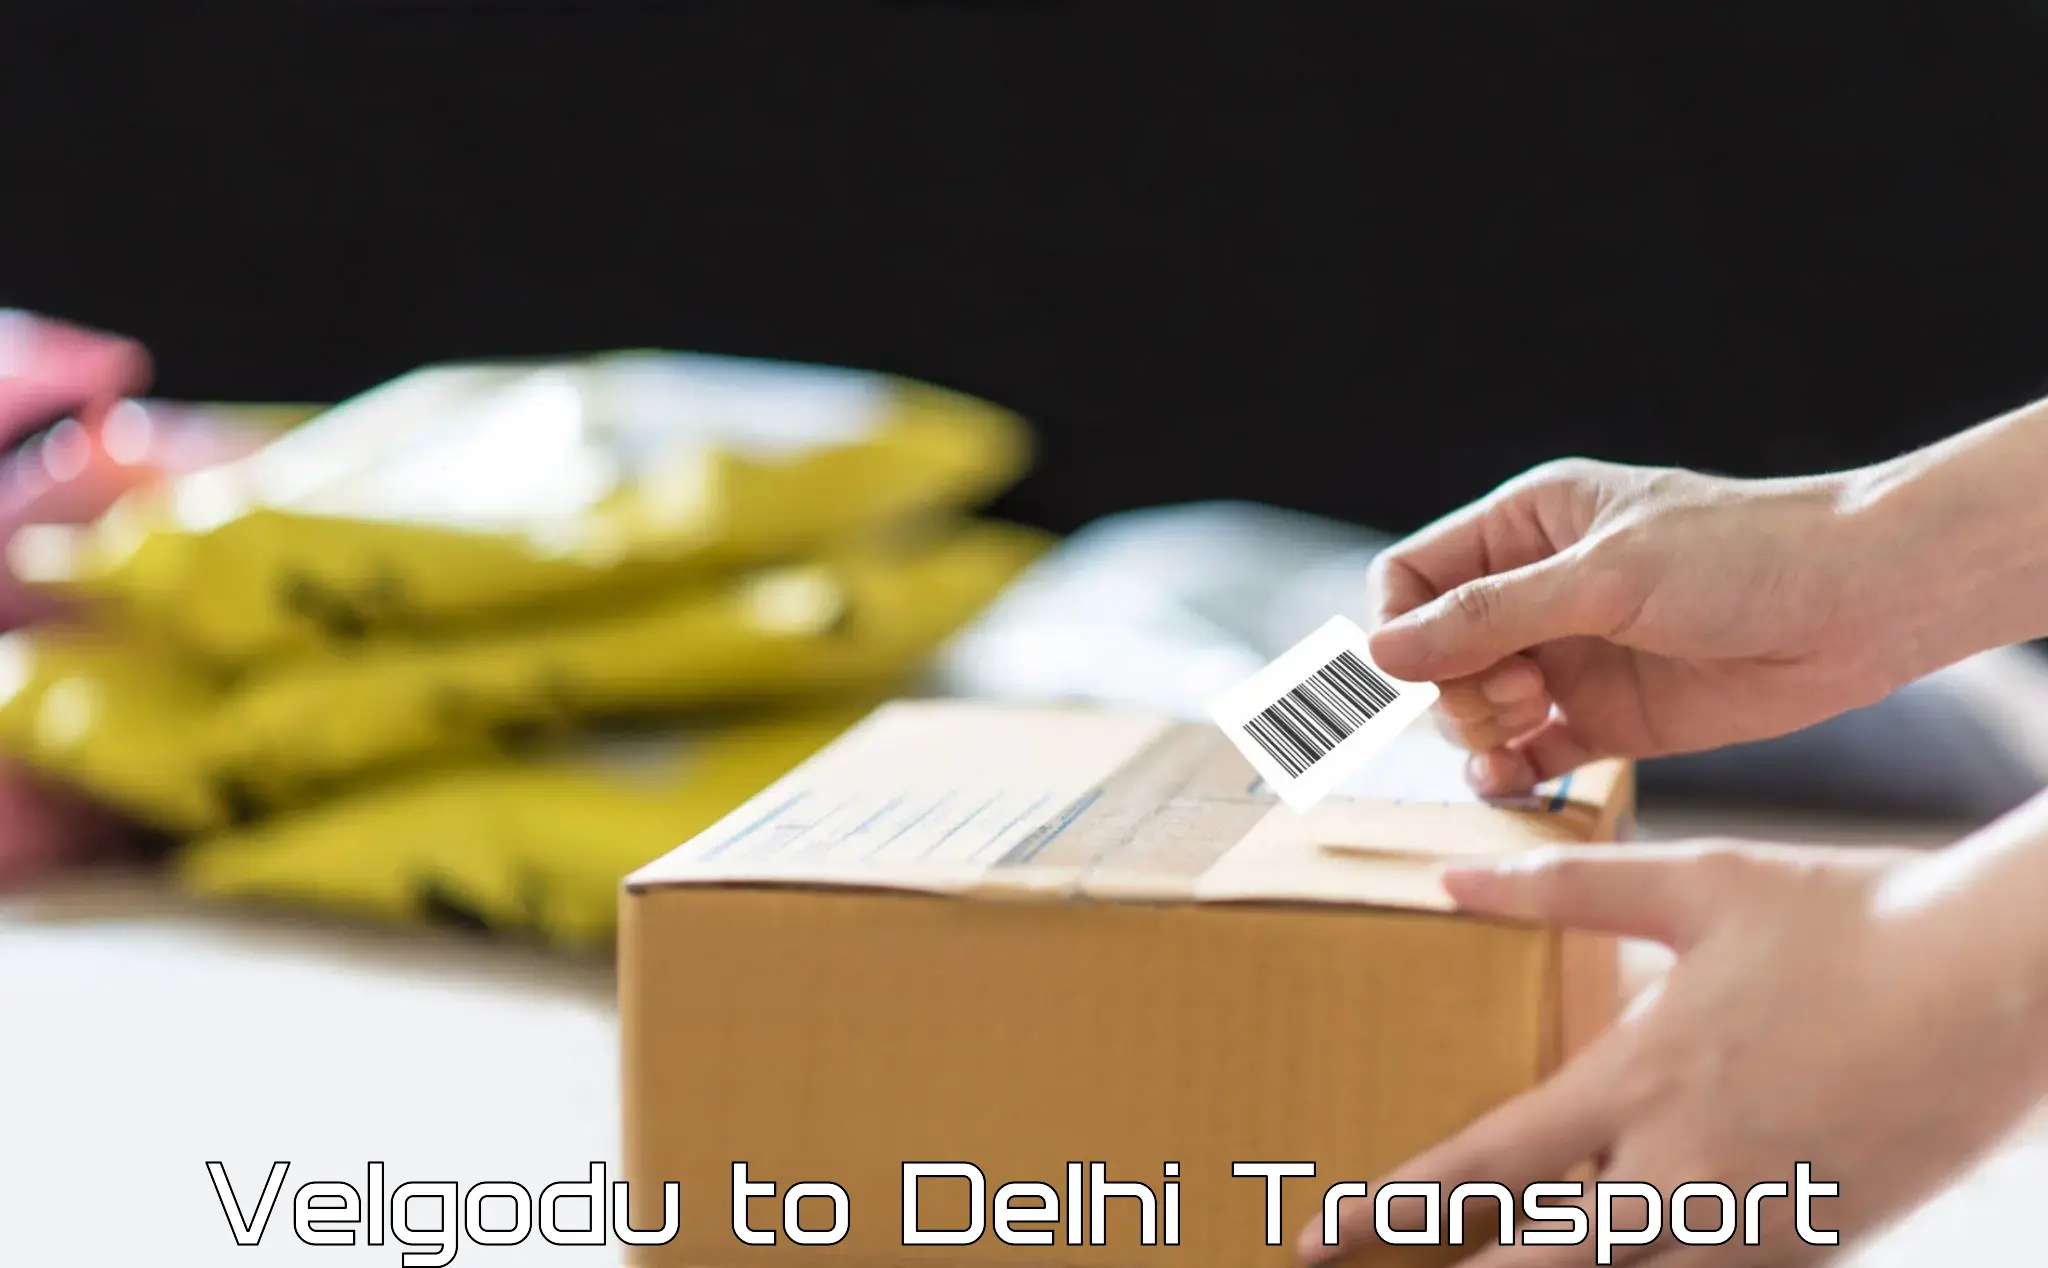 Land transport services Velgodu to Delhi